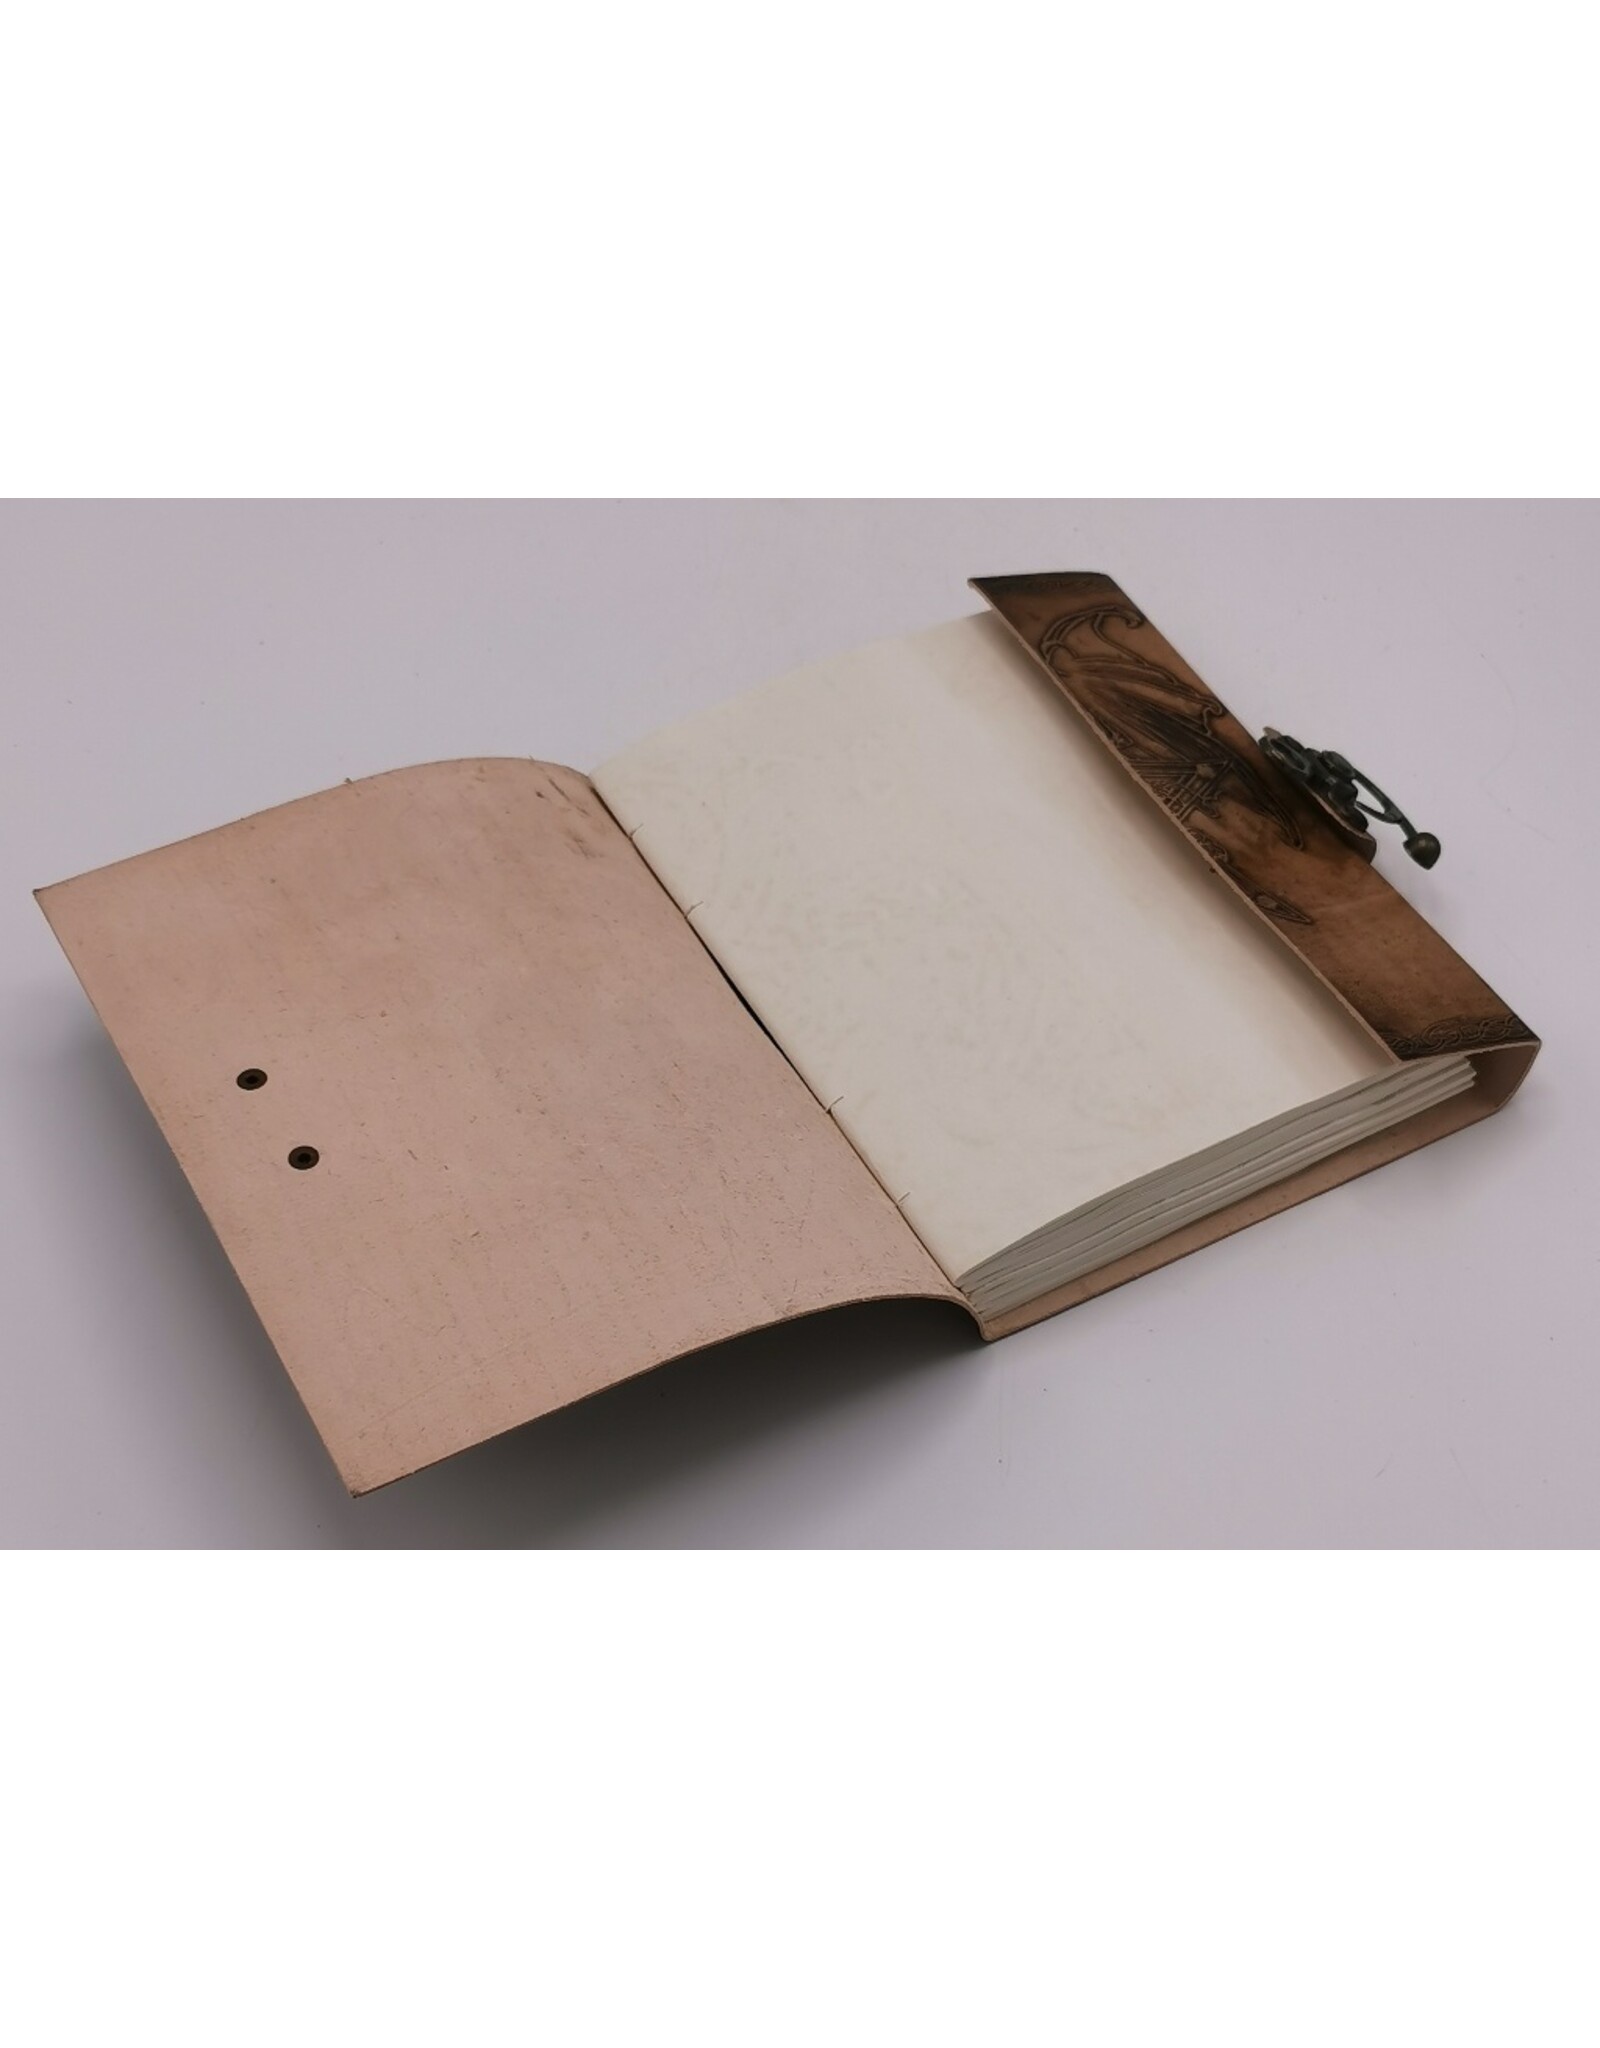 AWG Miscellaneous - Leren Notitieboek met Draak en Pentagram 20cm x 15cm